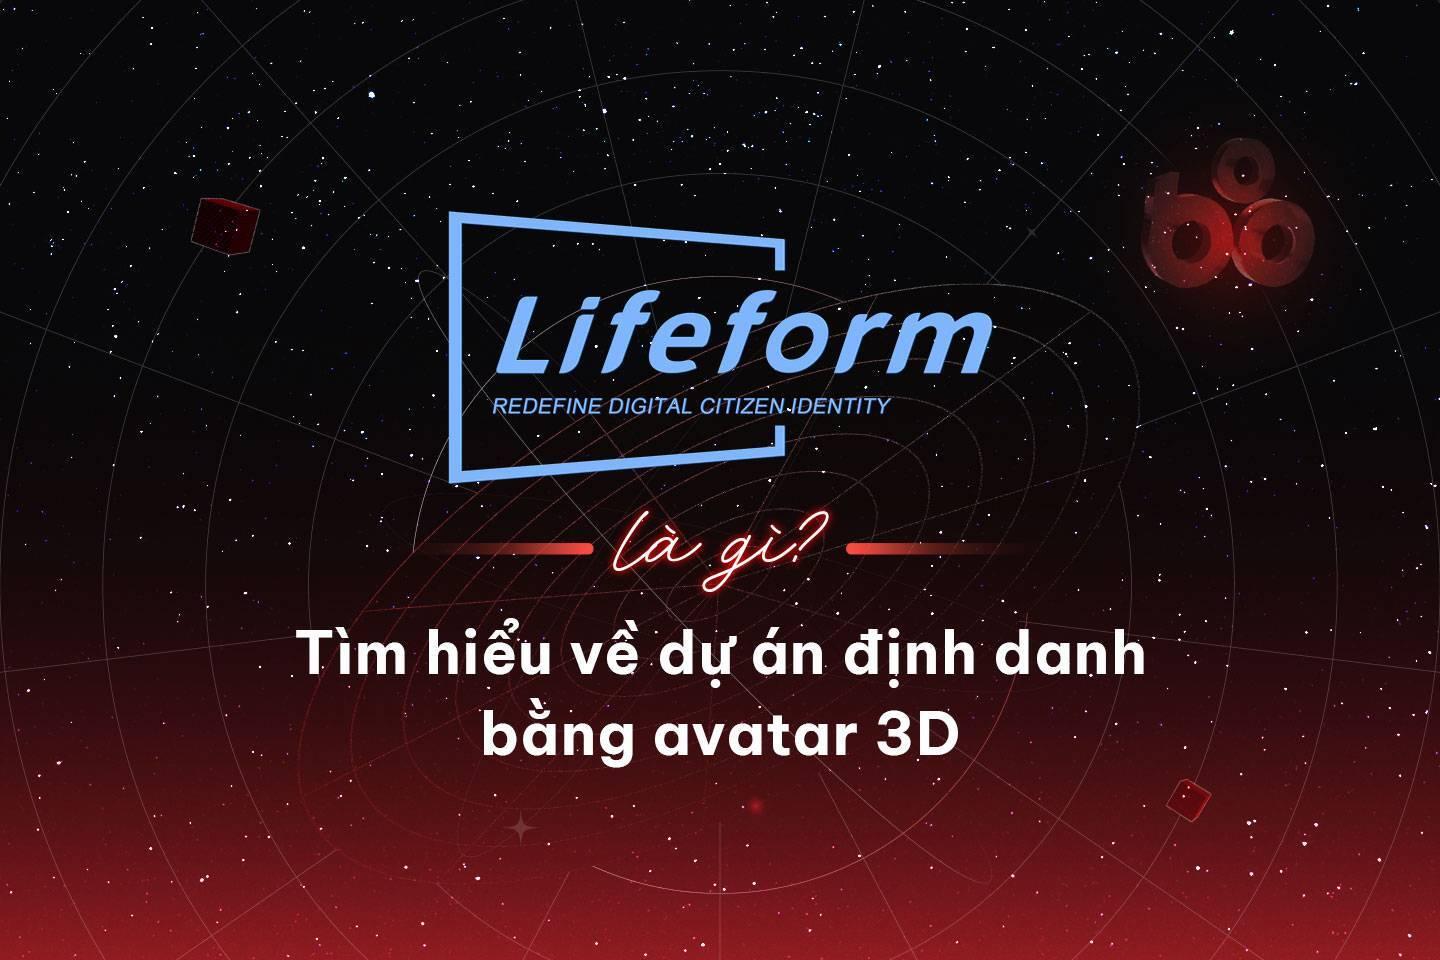 lifeform-la-gi-tim-hieu-ve-du-an-dinh-danh-bang-avatar-3d